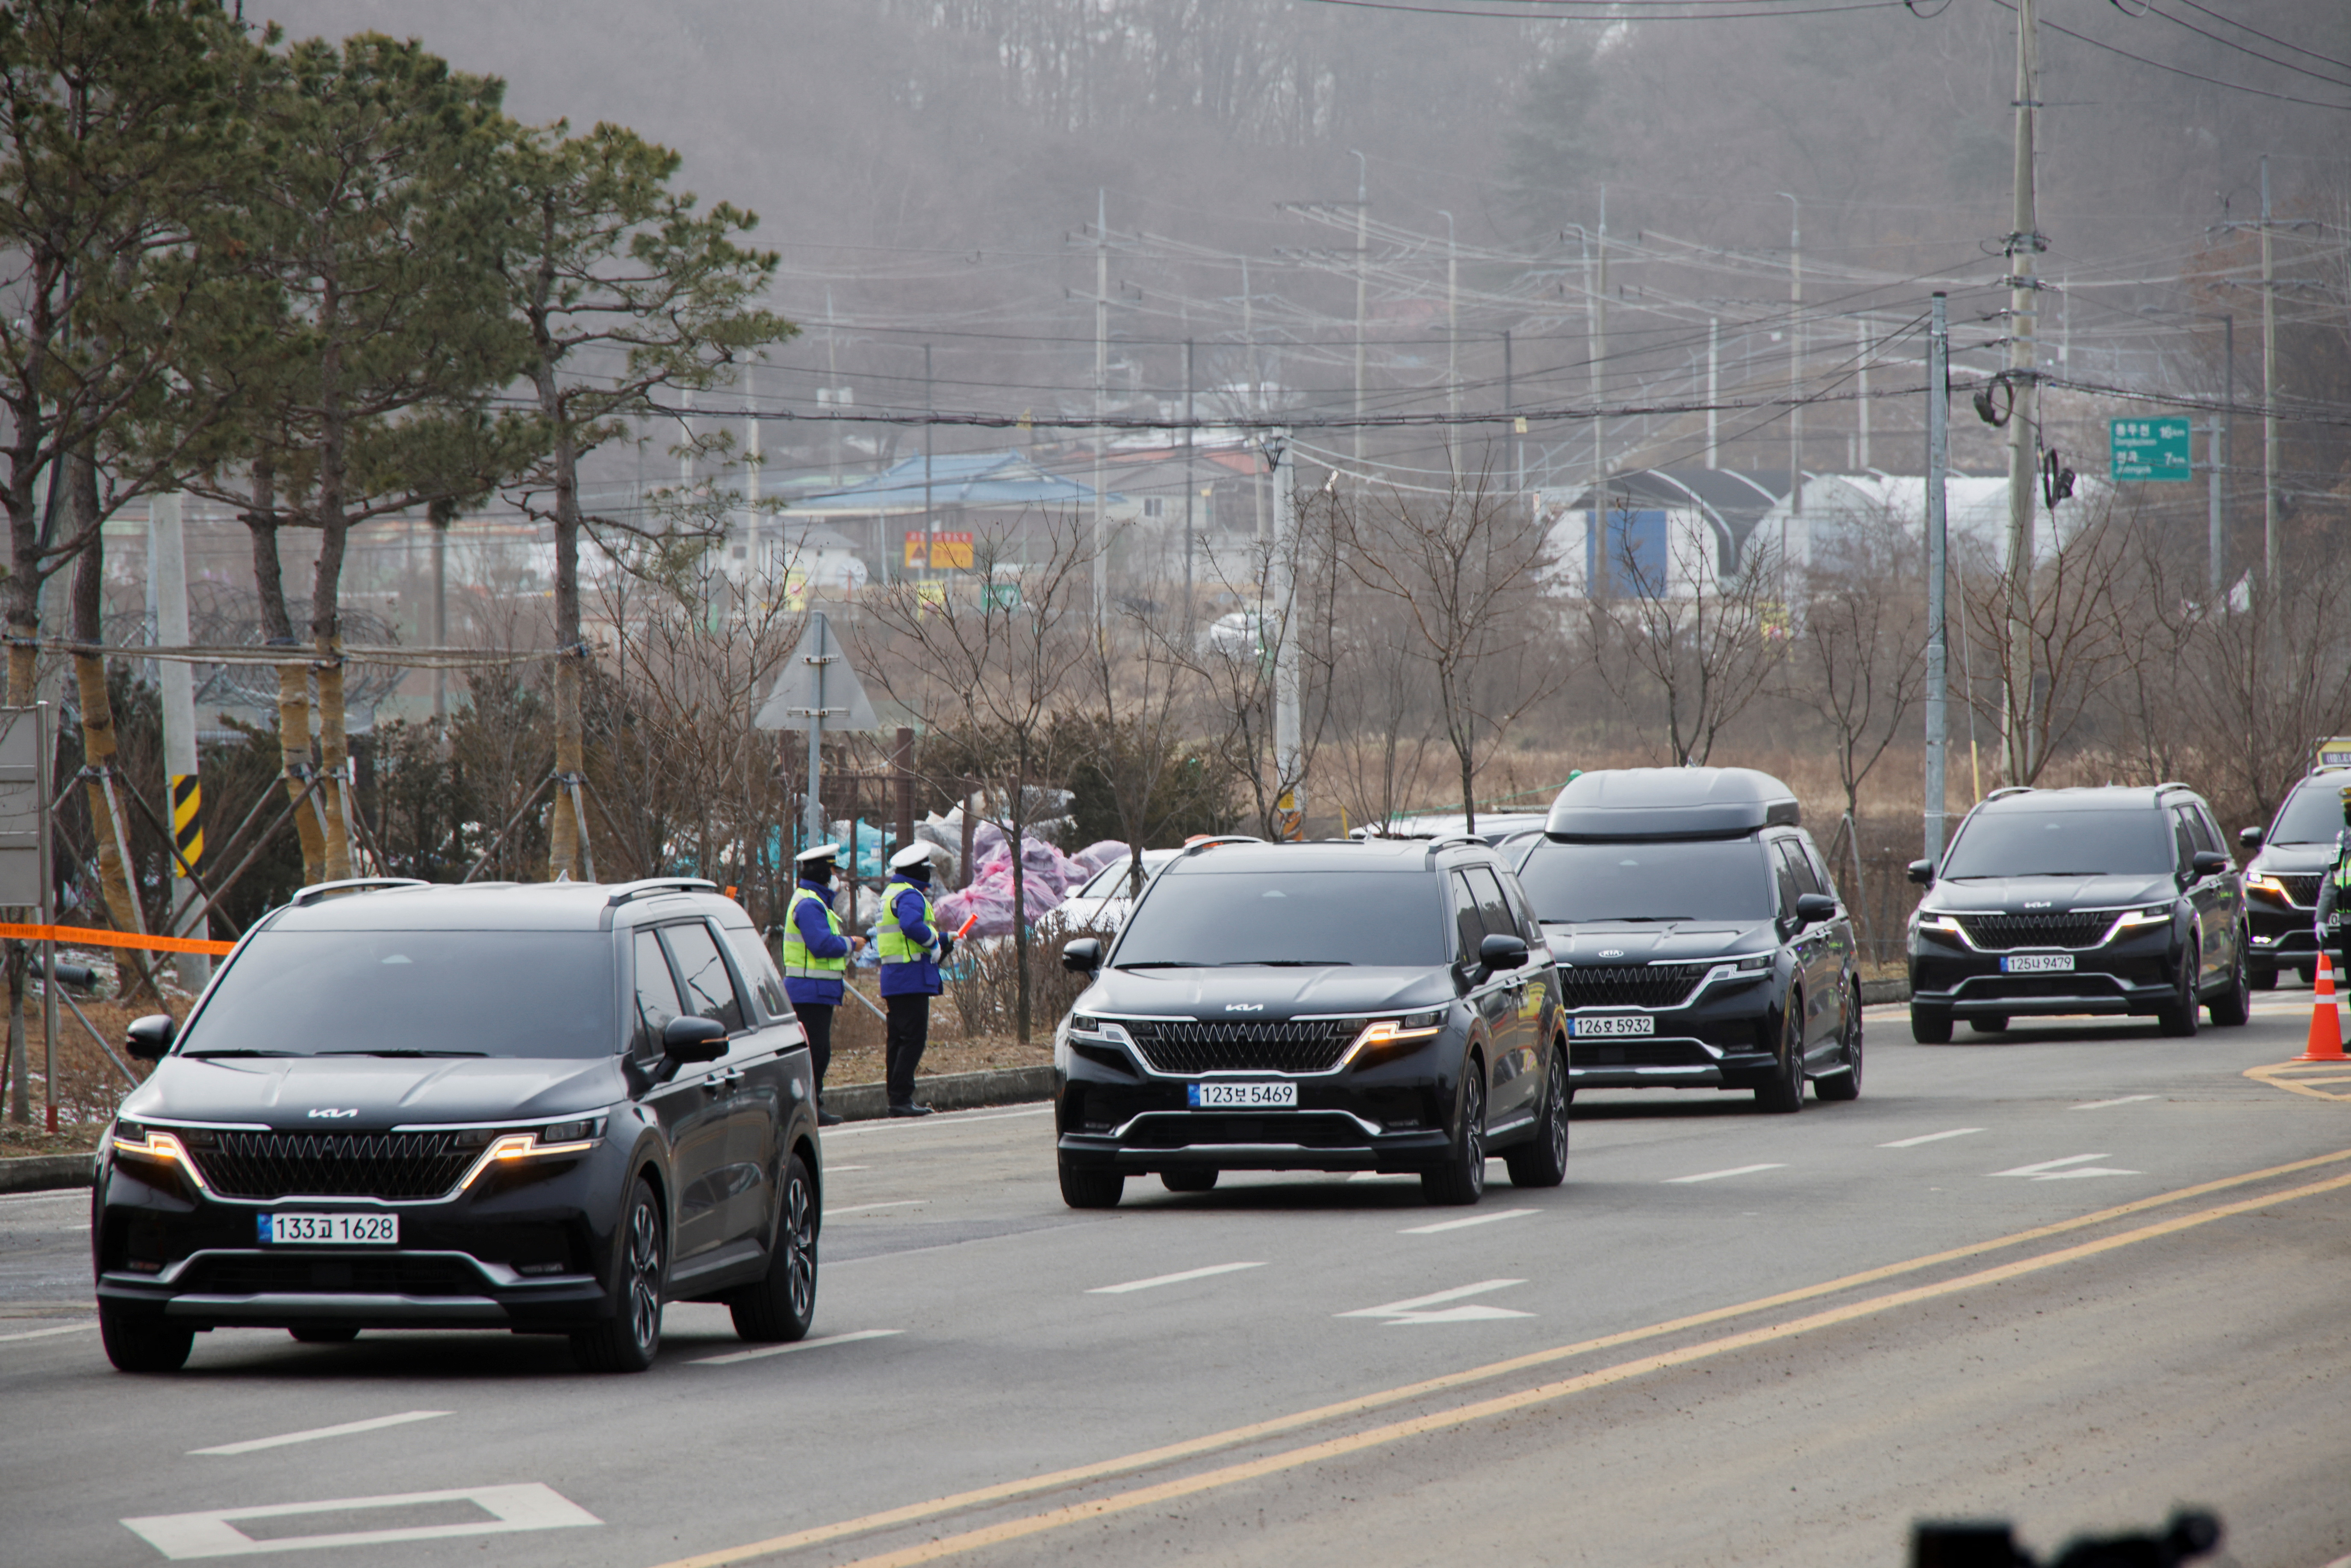 Un convoy de vehículos, uno de ellos transportando a Jin, llega para comenzar su entrenamiento militar, fuera de un campo de entrenamiento del ejército de Corea del Sur cerca de la zona desmilitarizada que separa las dos Coreas, en Yeoncheon, Sur. Corea 13 de diciembre de 2022. REUTERS/Heo Ran
